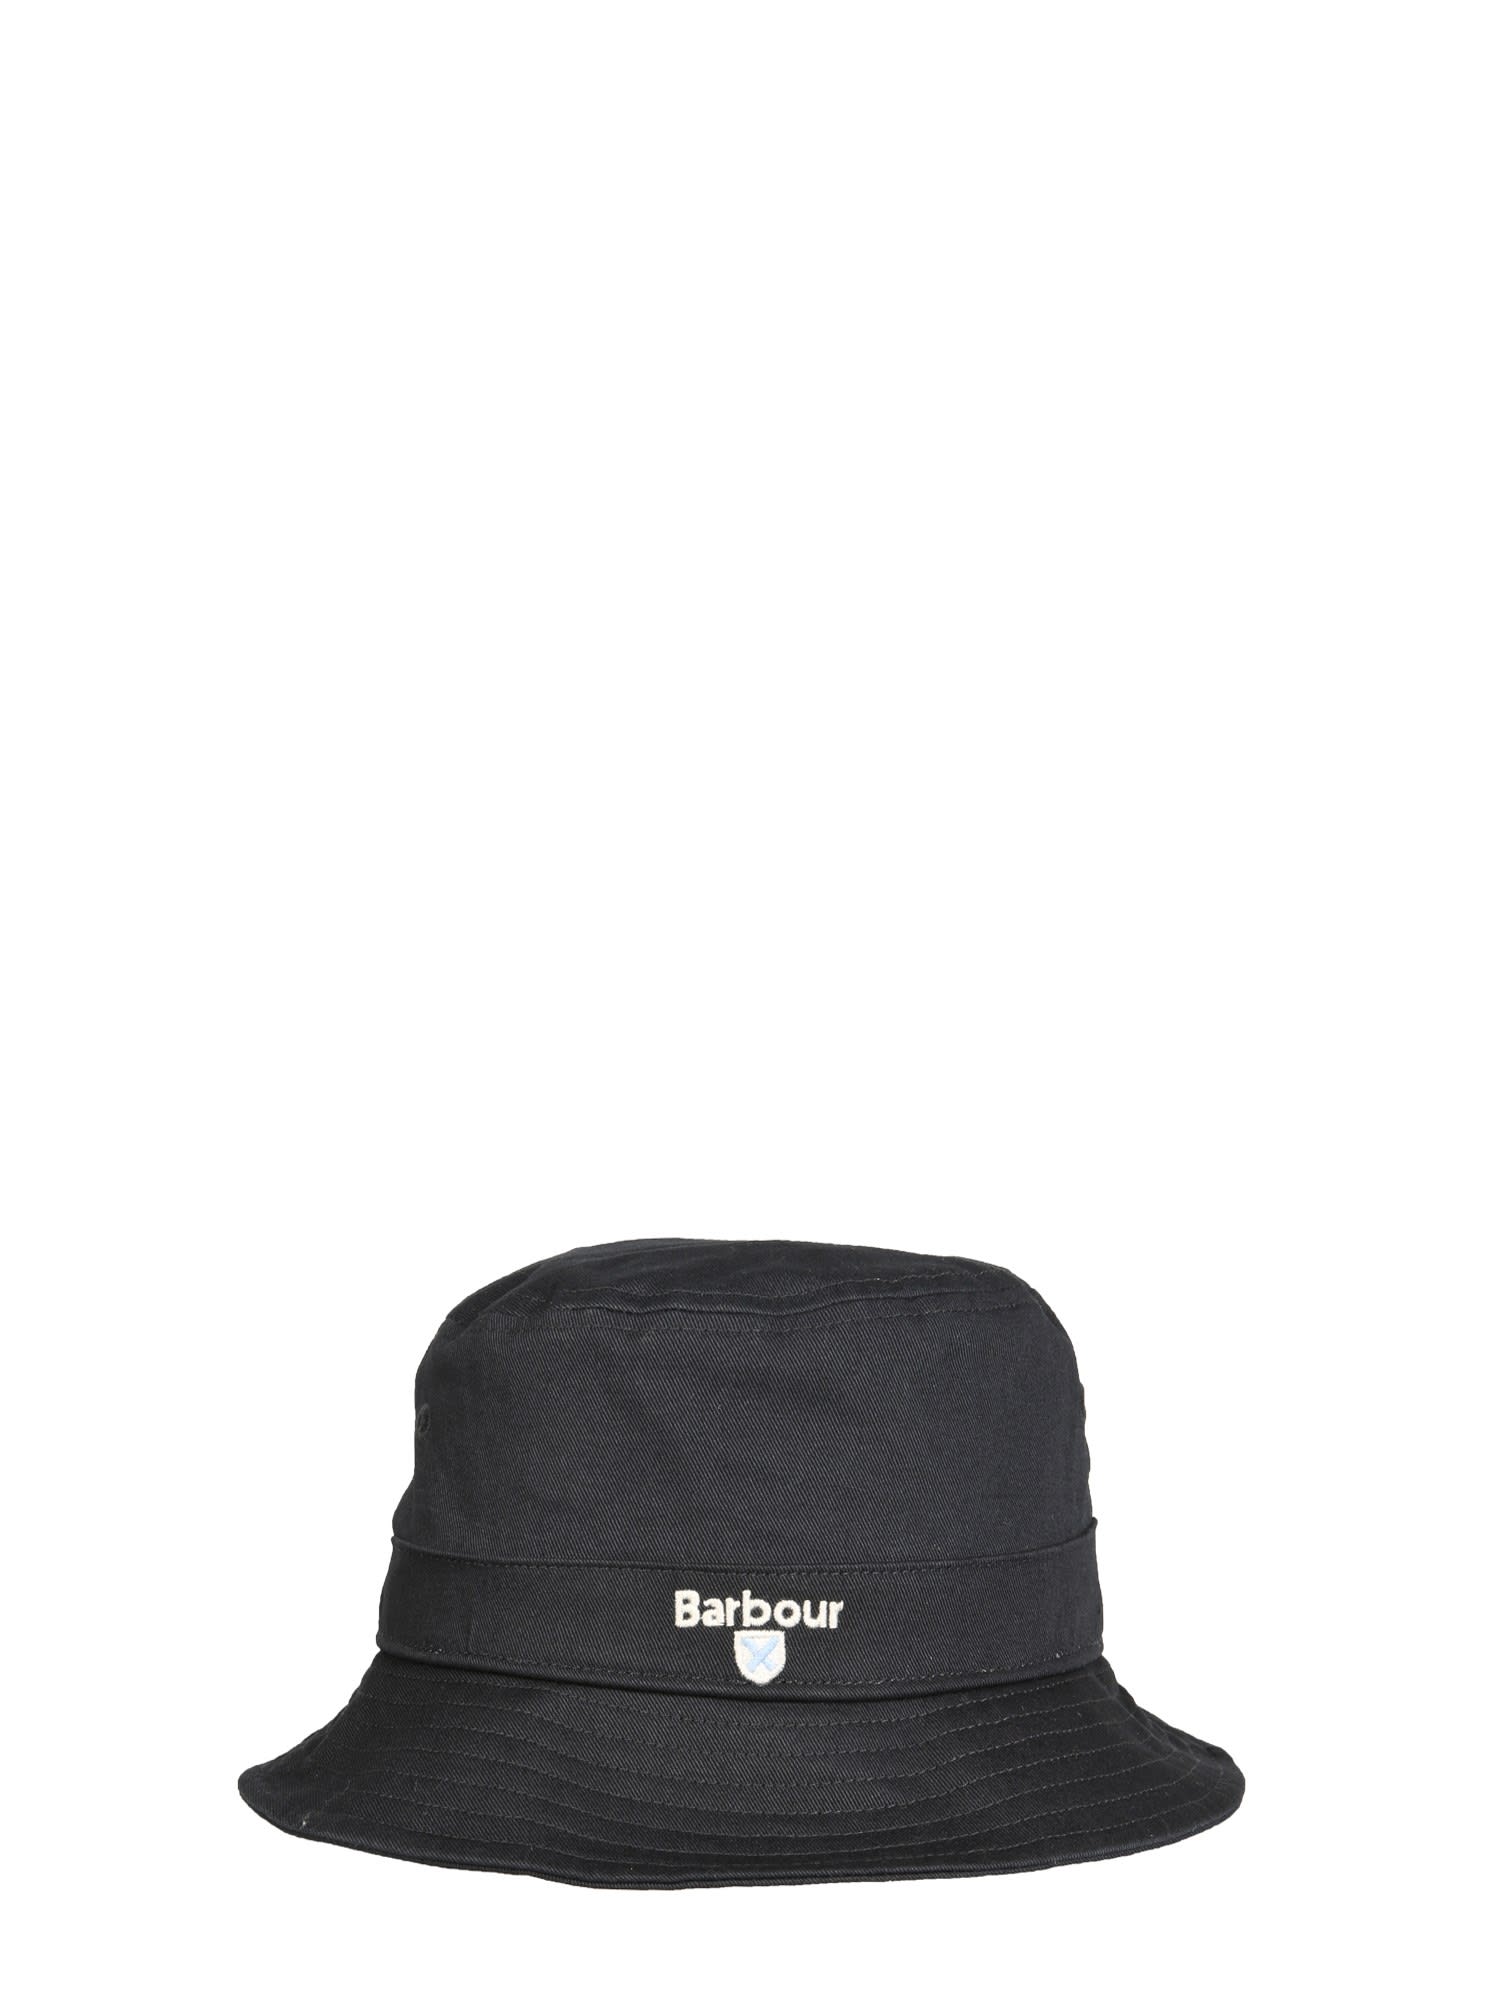 Barbour Bucket Hat